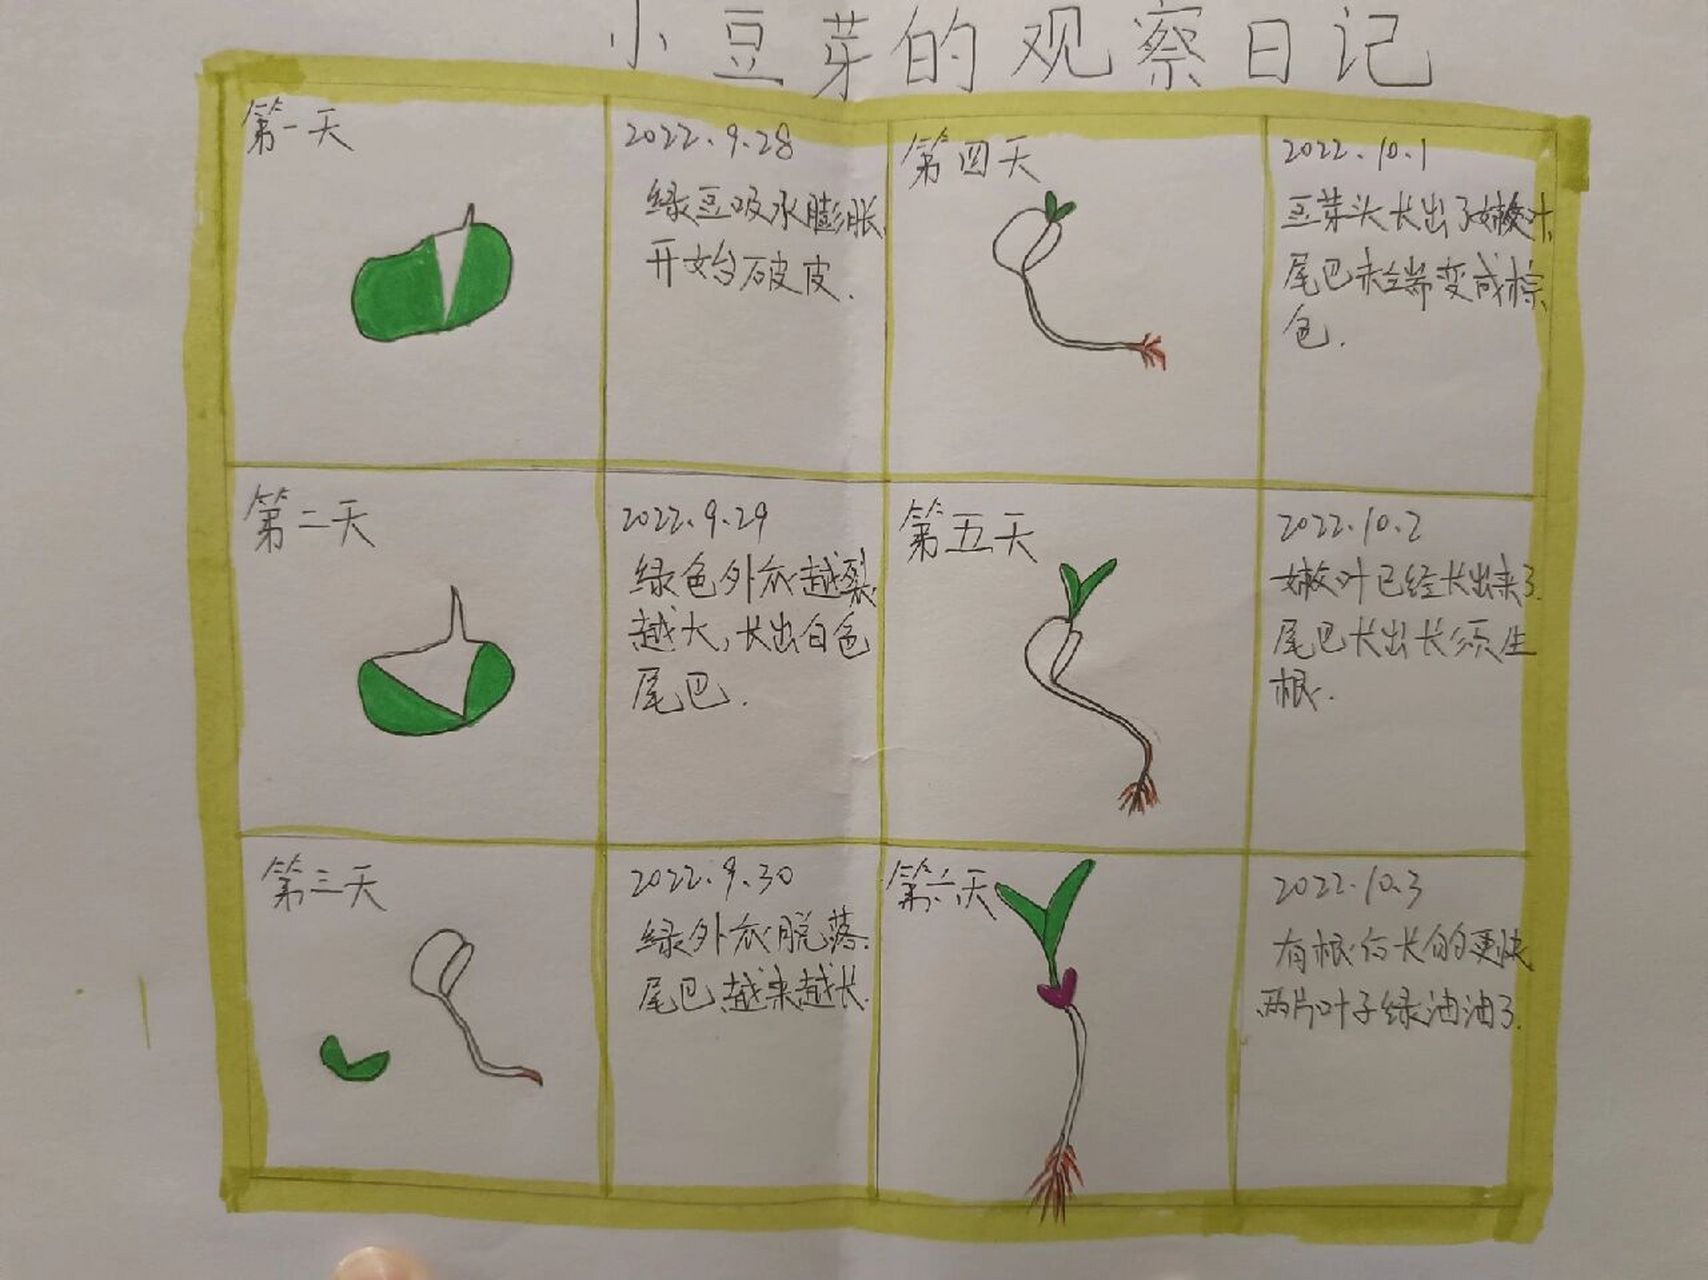 绿豆芽生长过程 日记图片